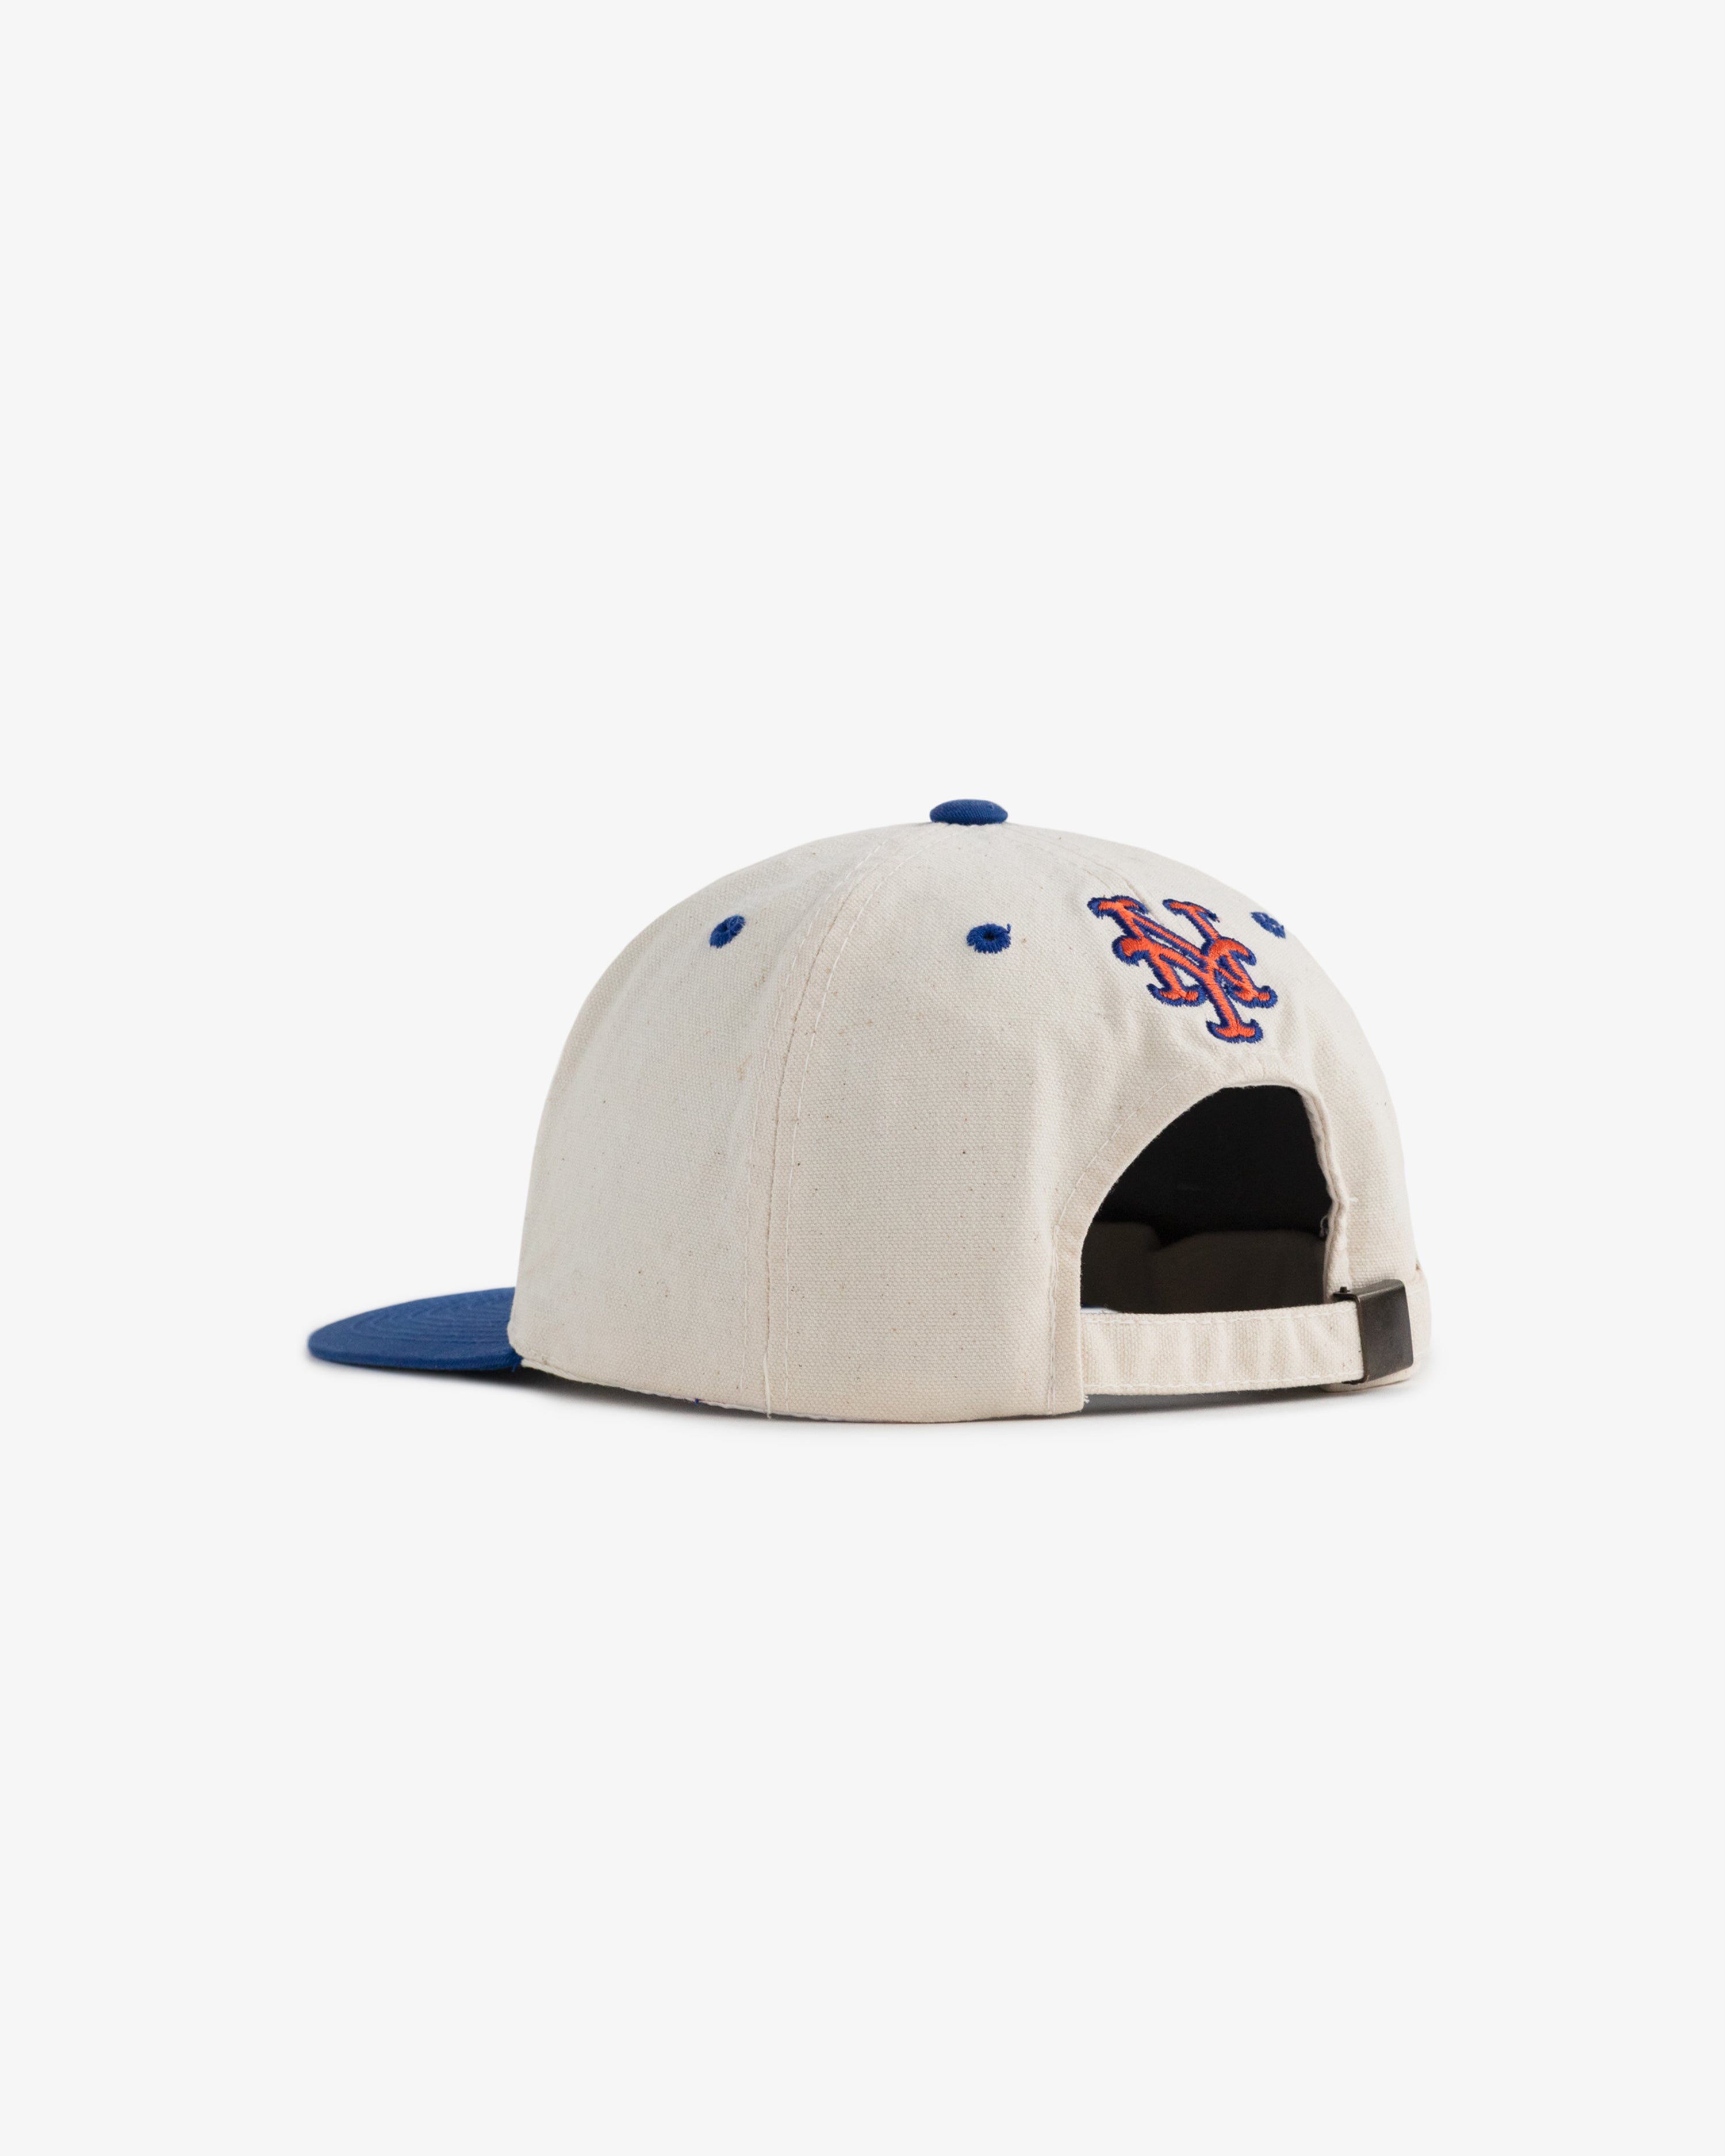 New York Mets Hat